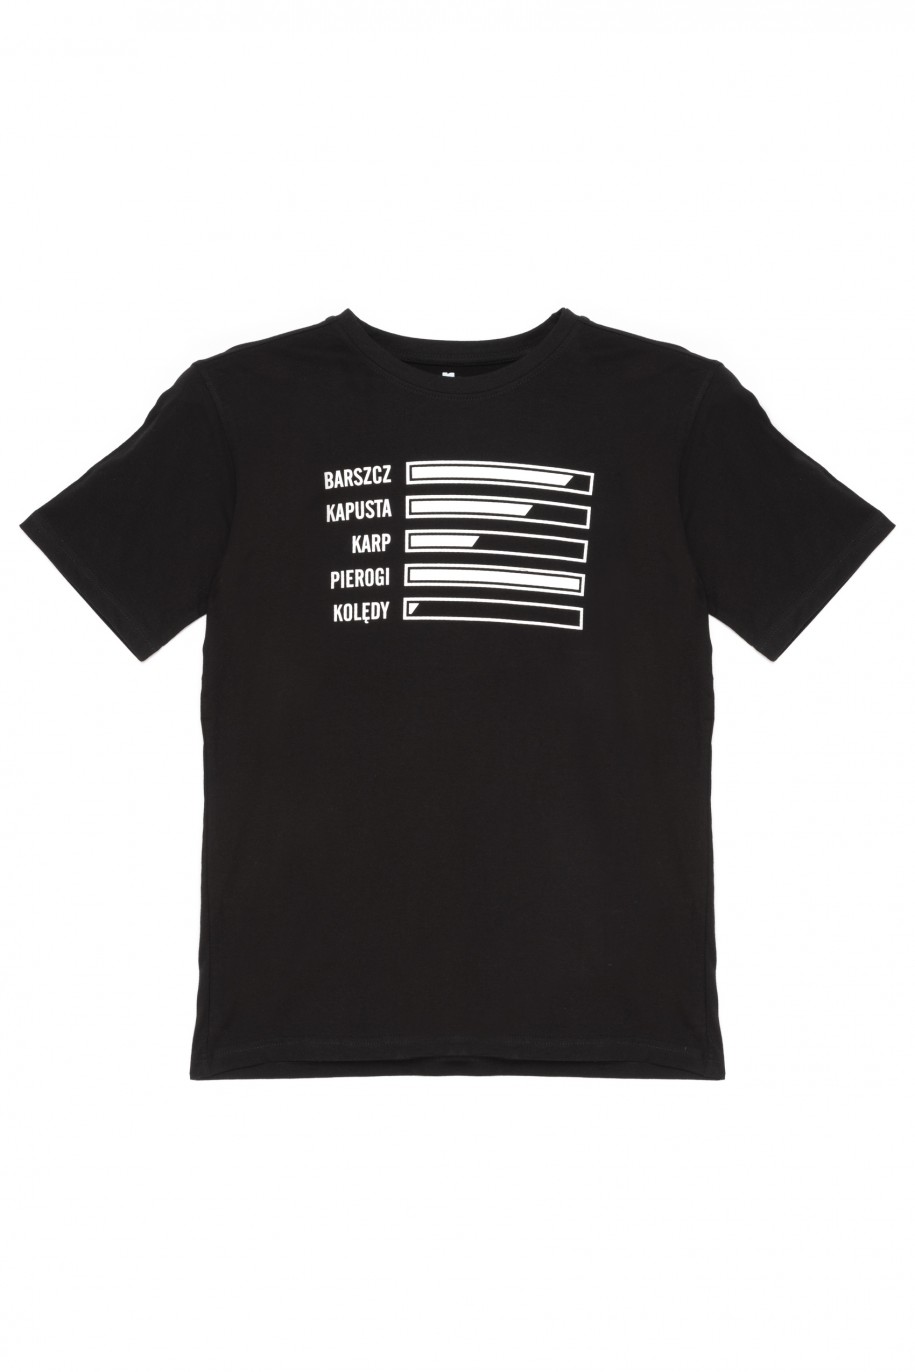 Czarny t-shirt dla chłopaka ŚWIĘTA - 44907